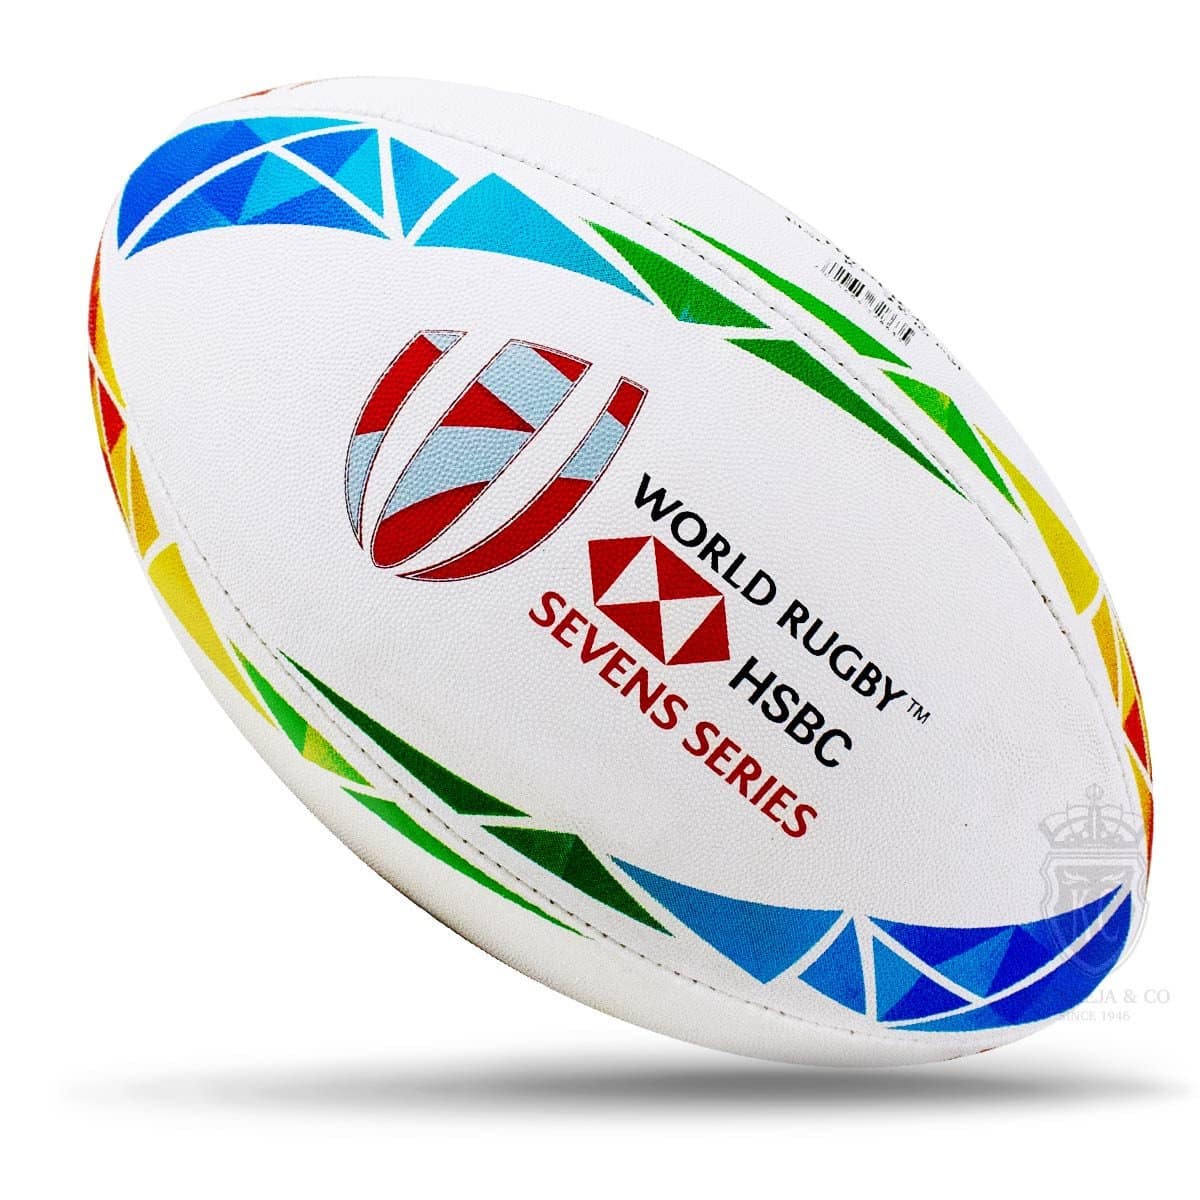 Balon World Rugby Sevens Series Gilbert